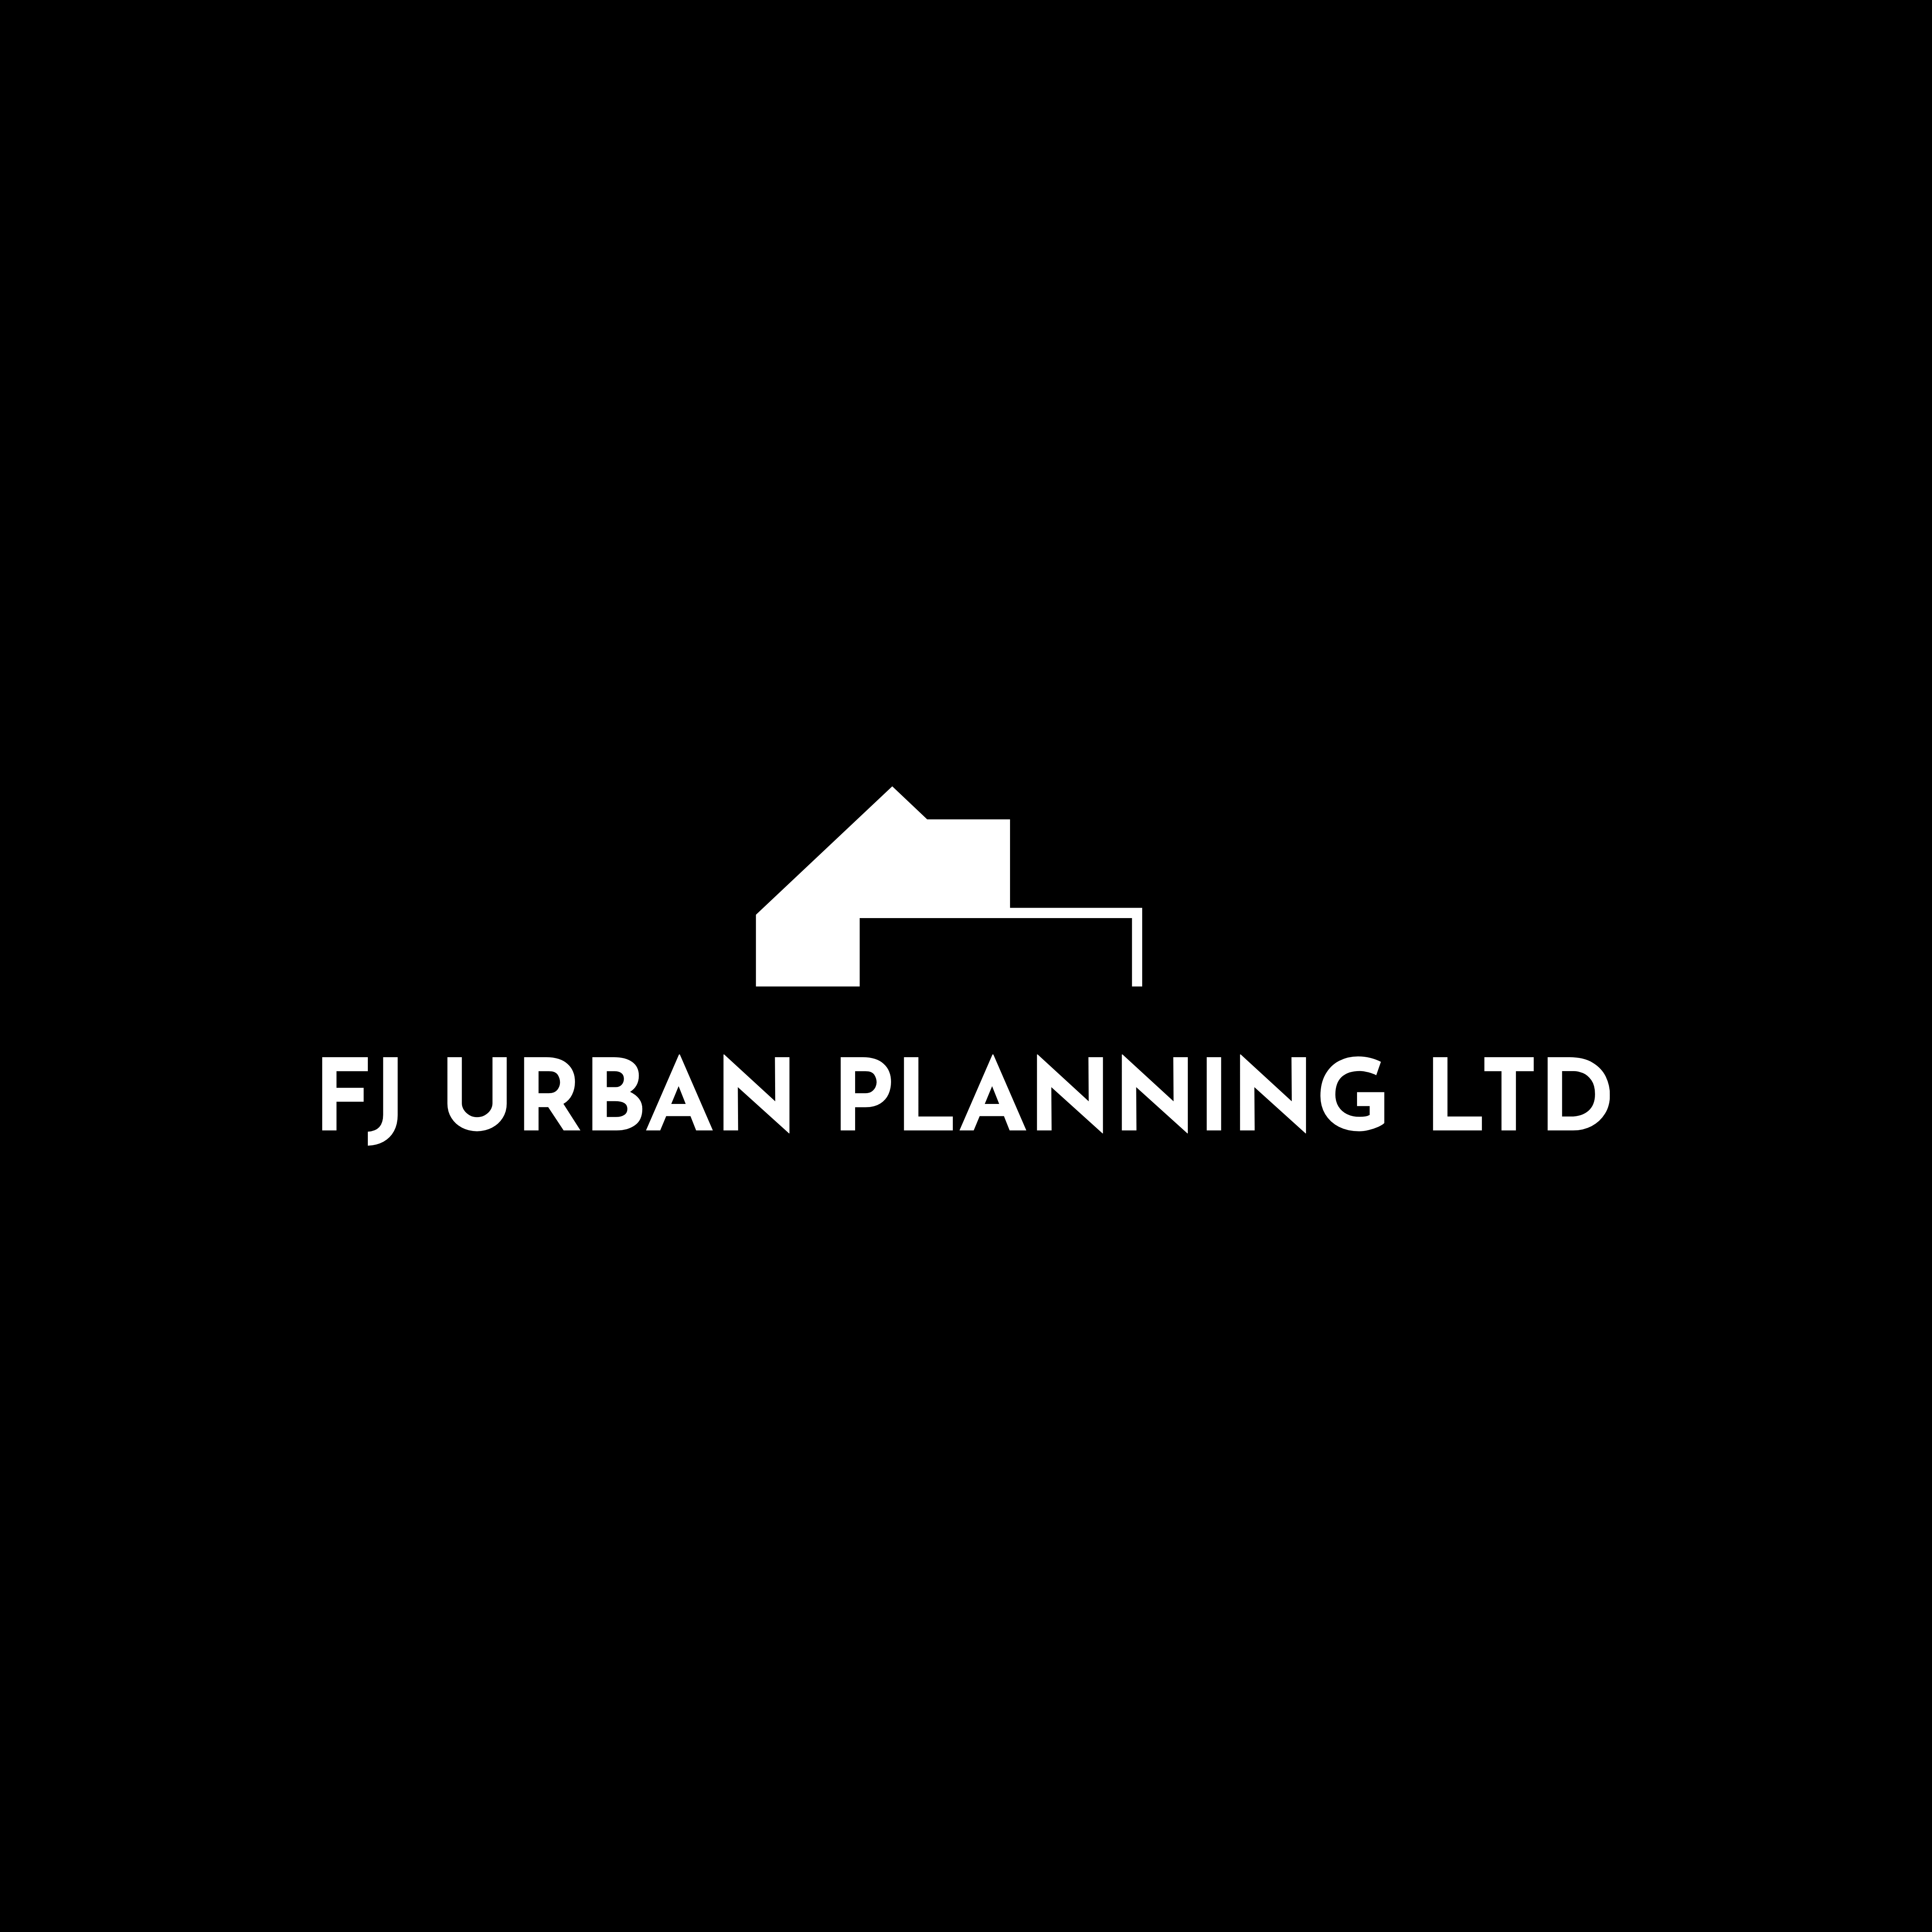 FJ Urban Planning Ltd